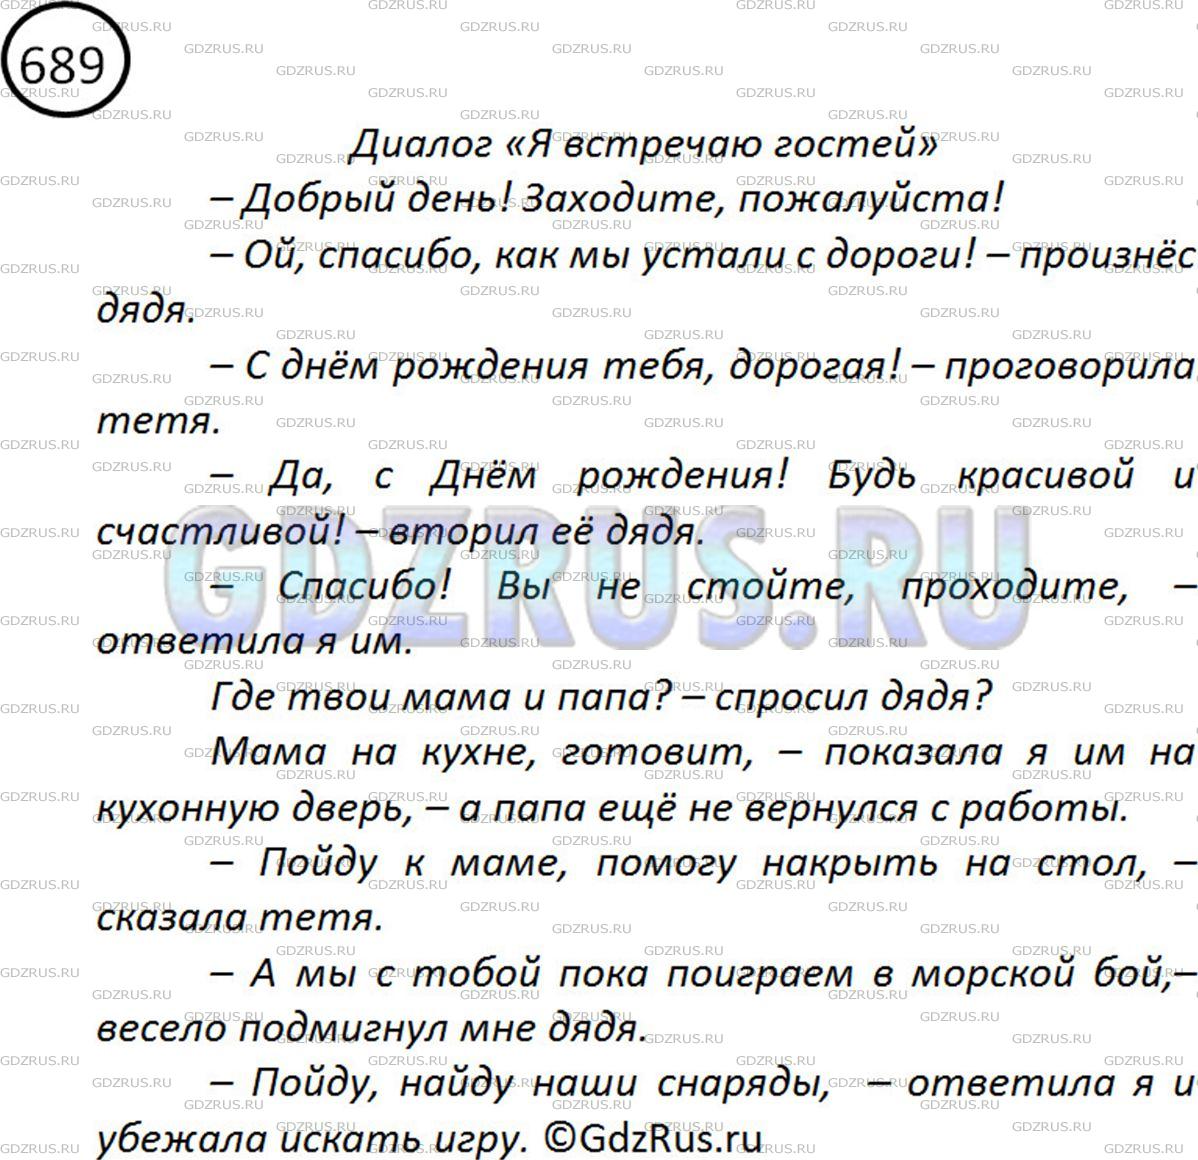 Фото решения 2: ГДЗ по Русскому языку 5 класса: Ладыженская Упр. 689